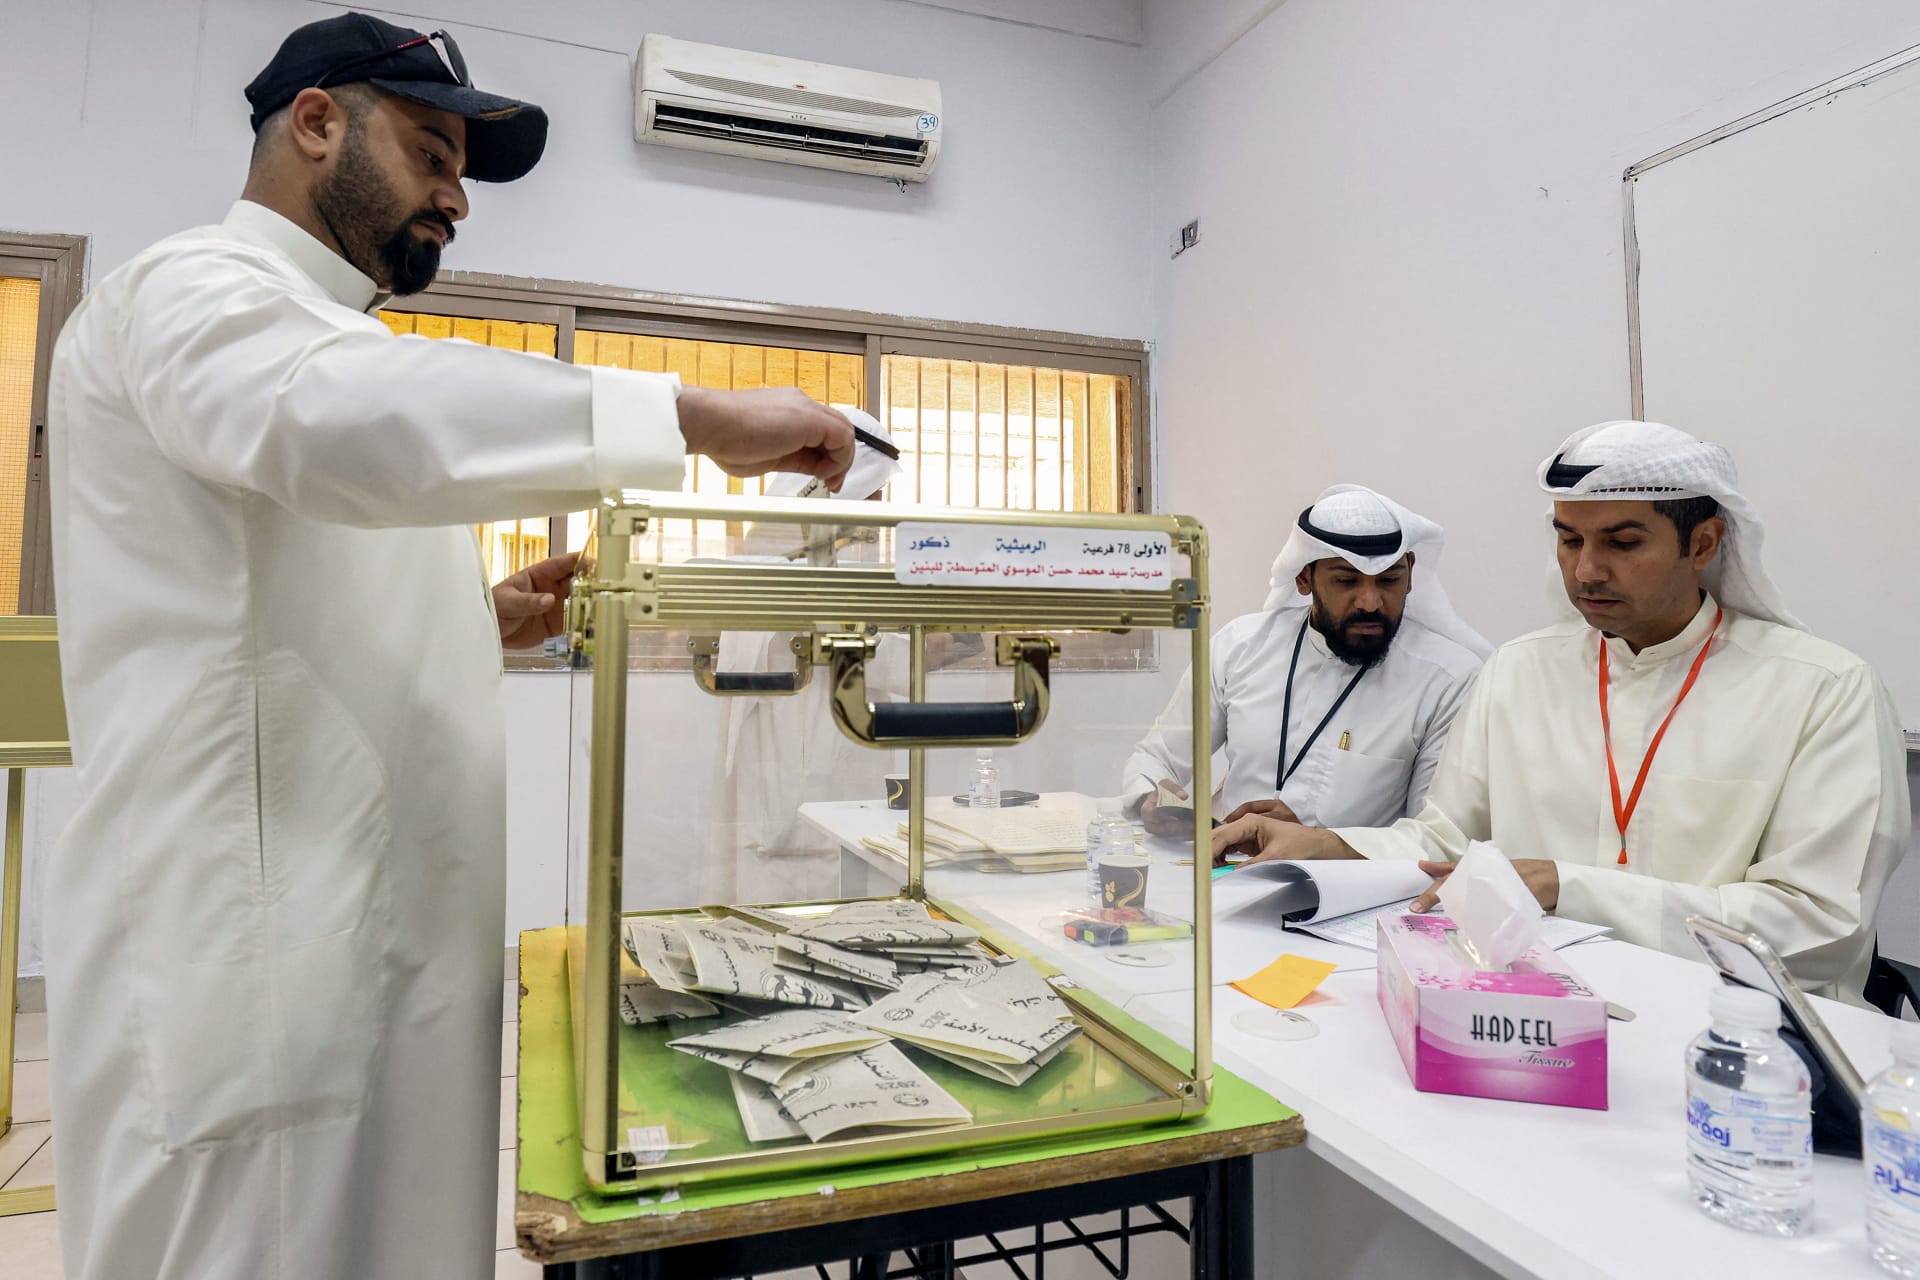 حكومة الكويت توضح صحة سعيها لتعديل قانون الانتخاب بما يحرم شريحة من المواطنين من المشاركة والترشح